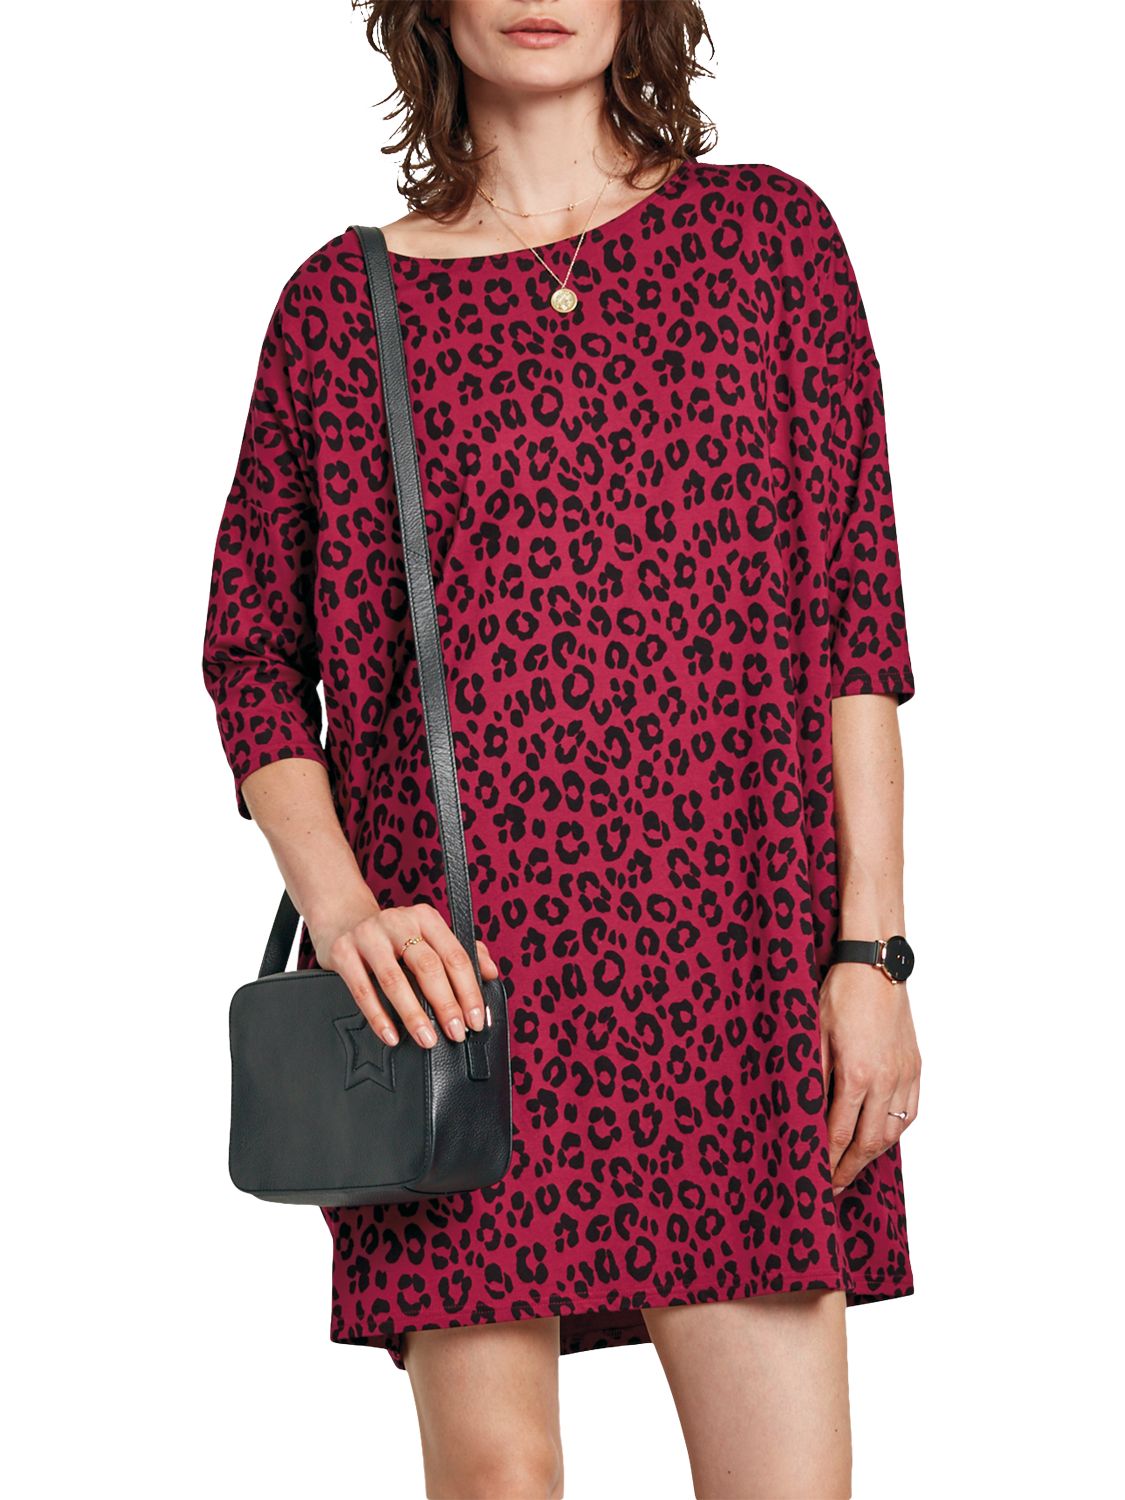 hush leopard print dress